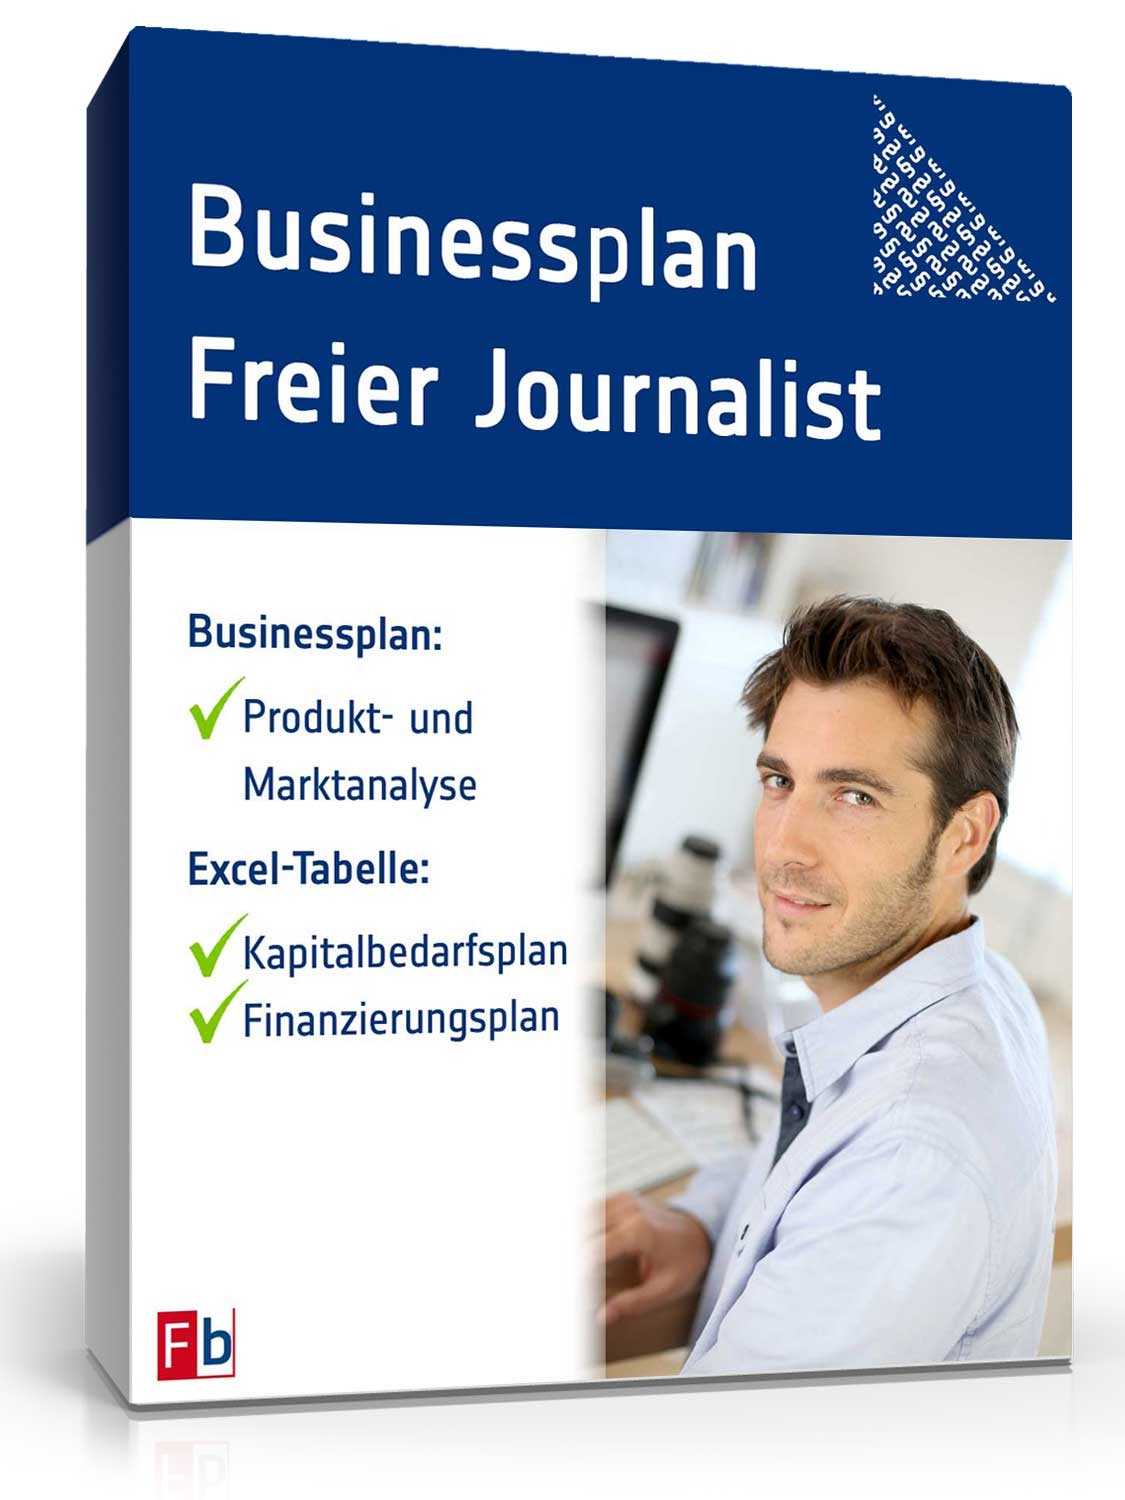 Hauptbild des Produkts: Businessplan Freier Journalist